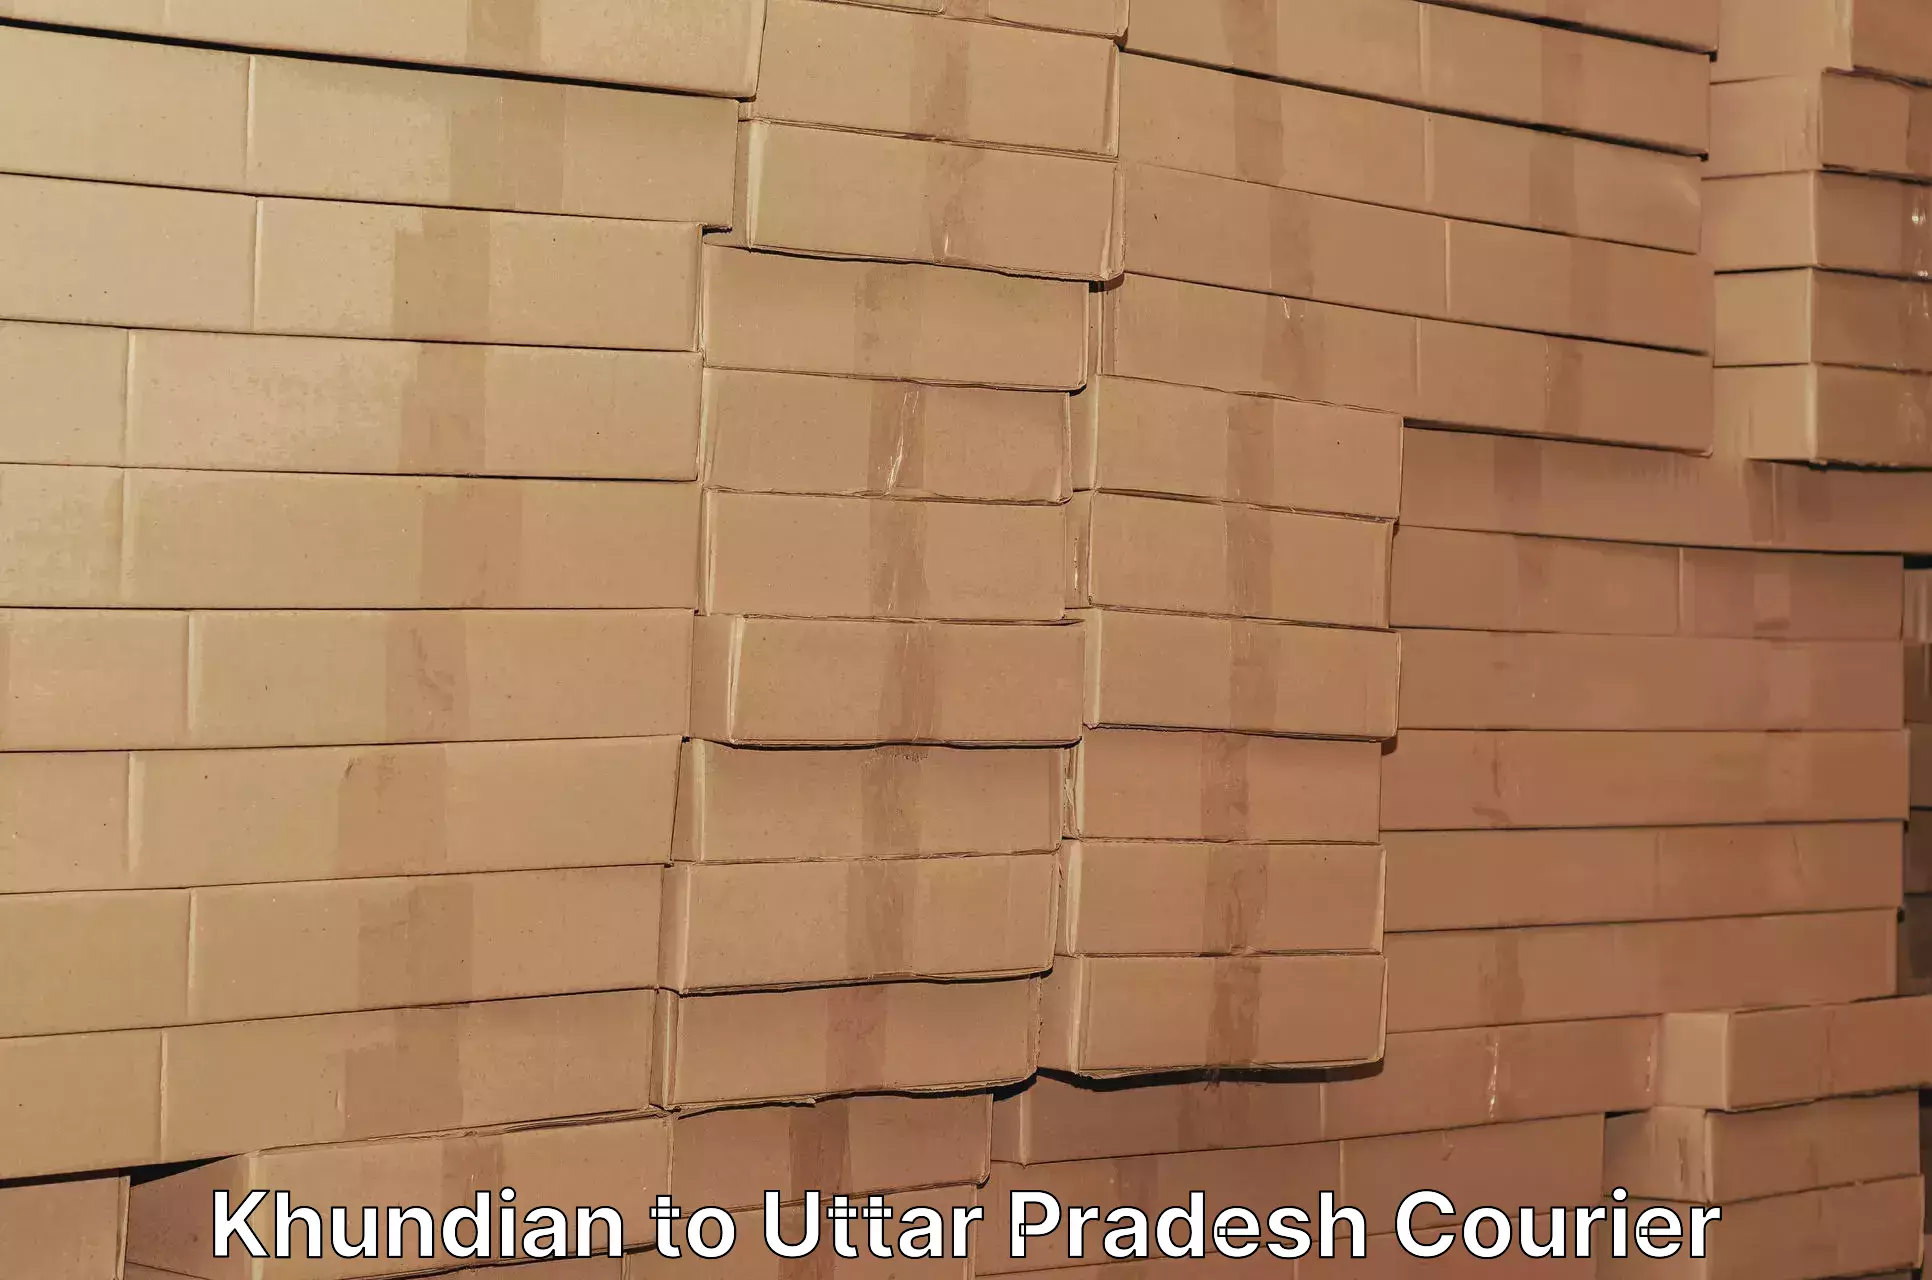 Bulk courier orders Khundian to Sonbhadra